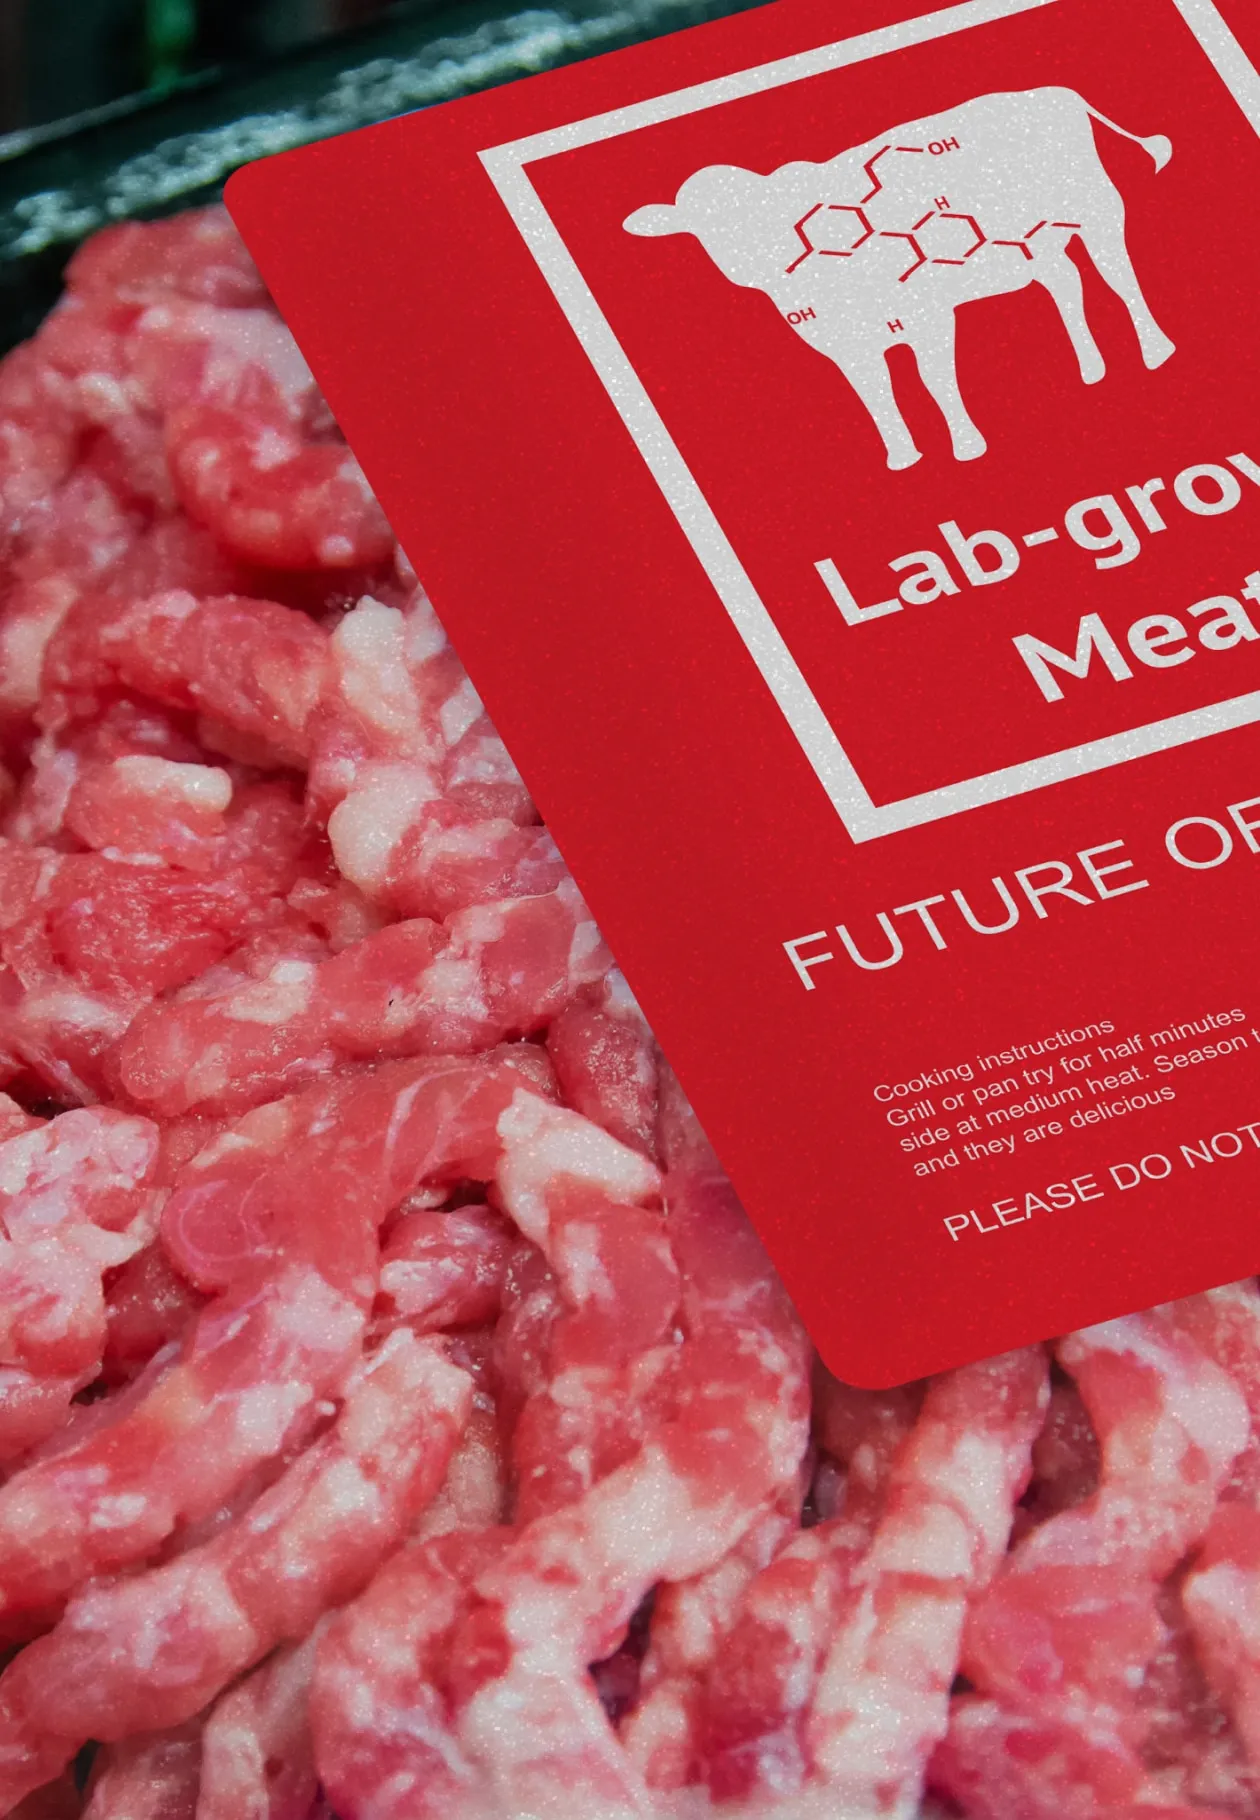 Closeup of lab-grown meat packaging